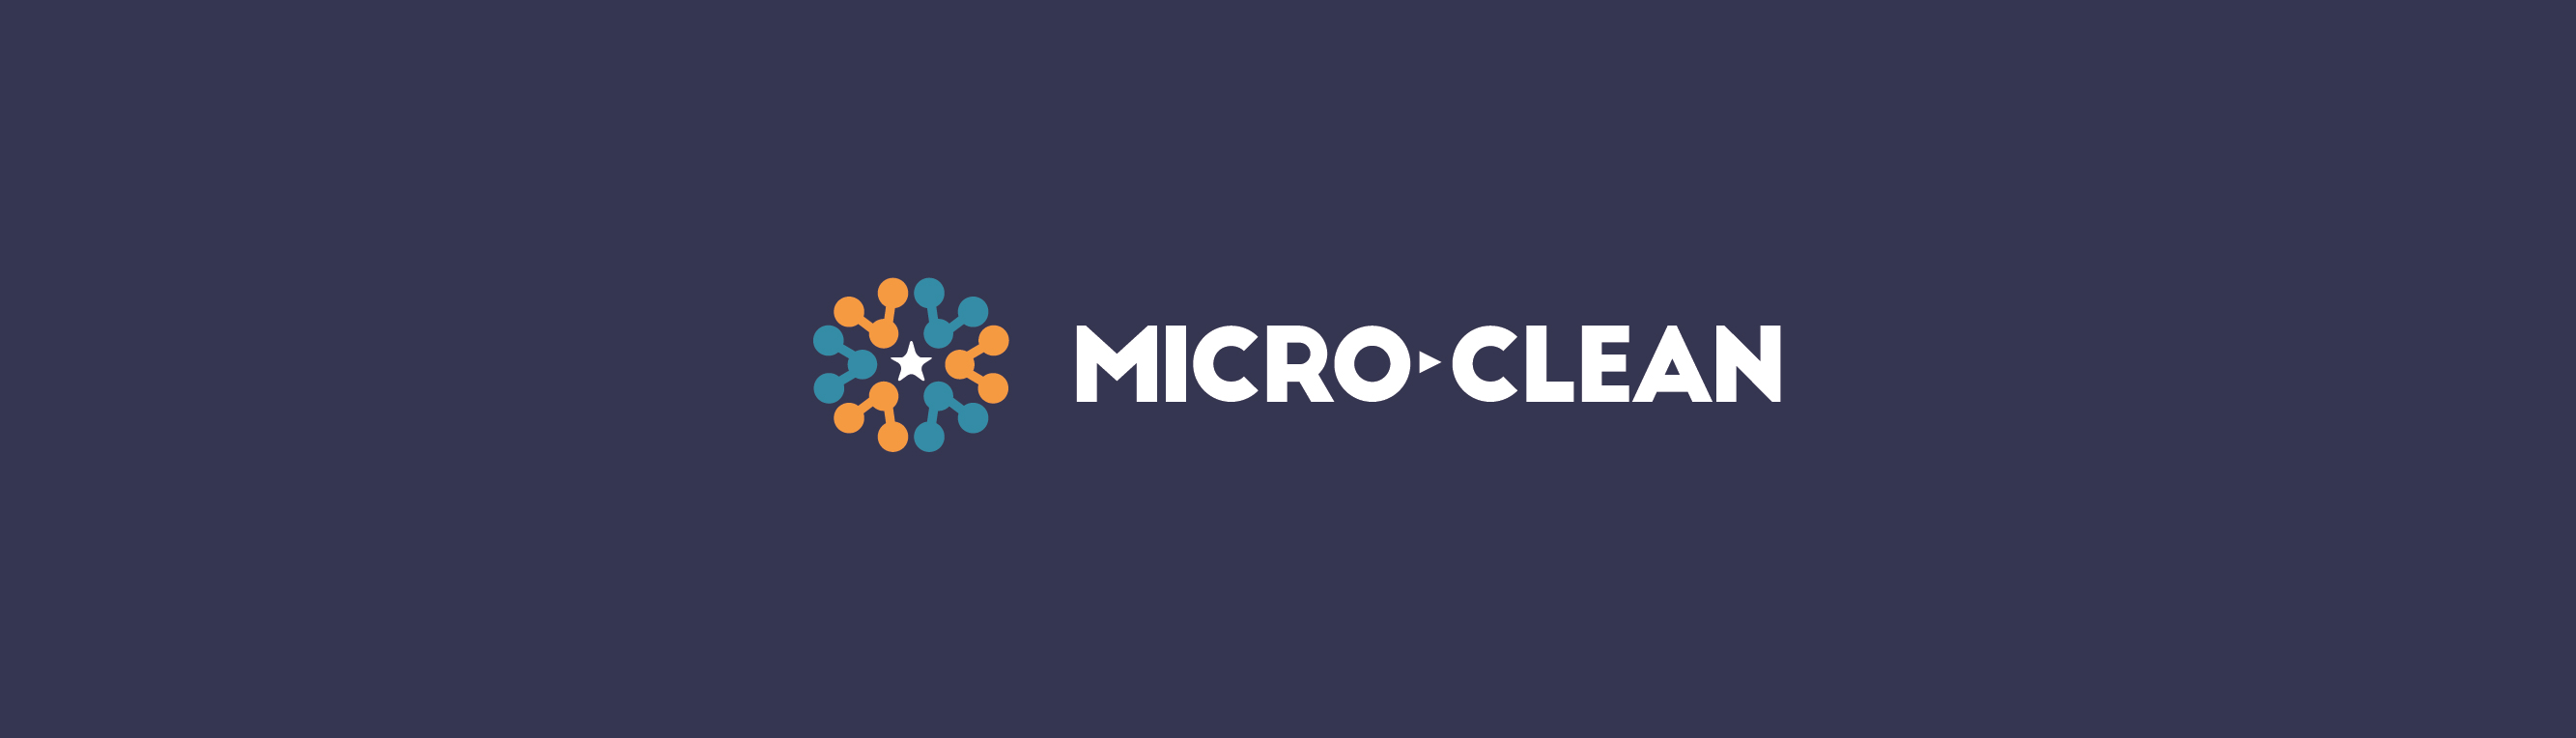 microclean header